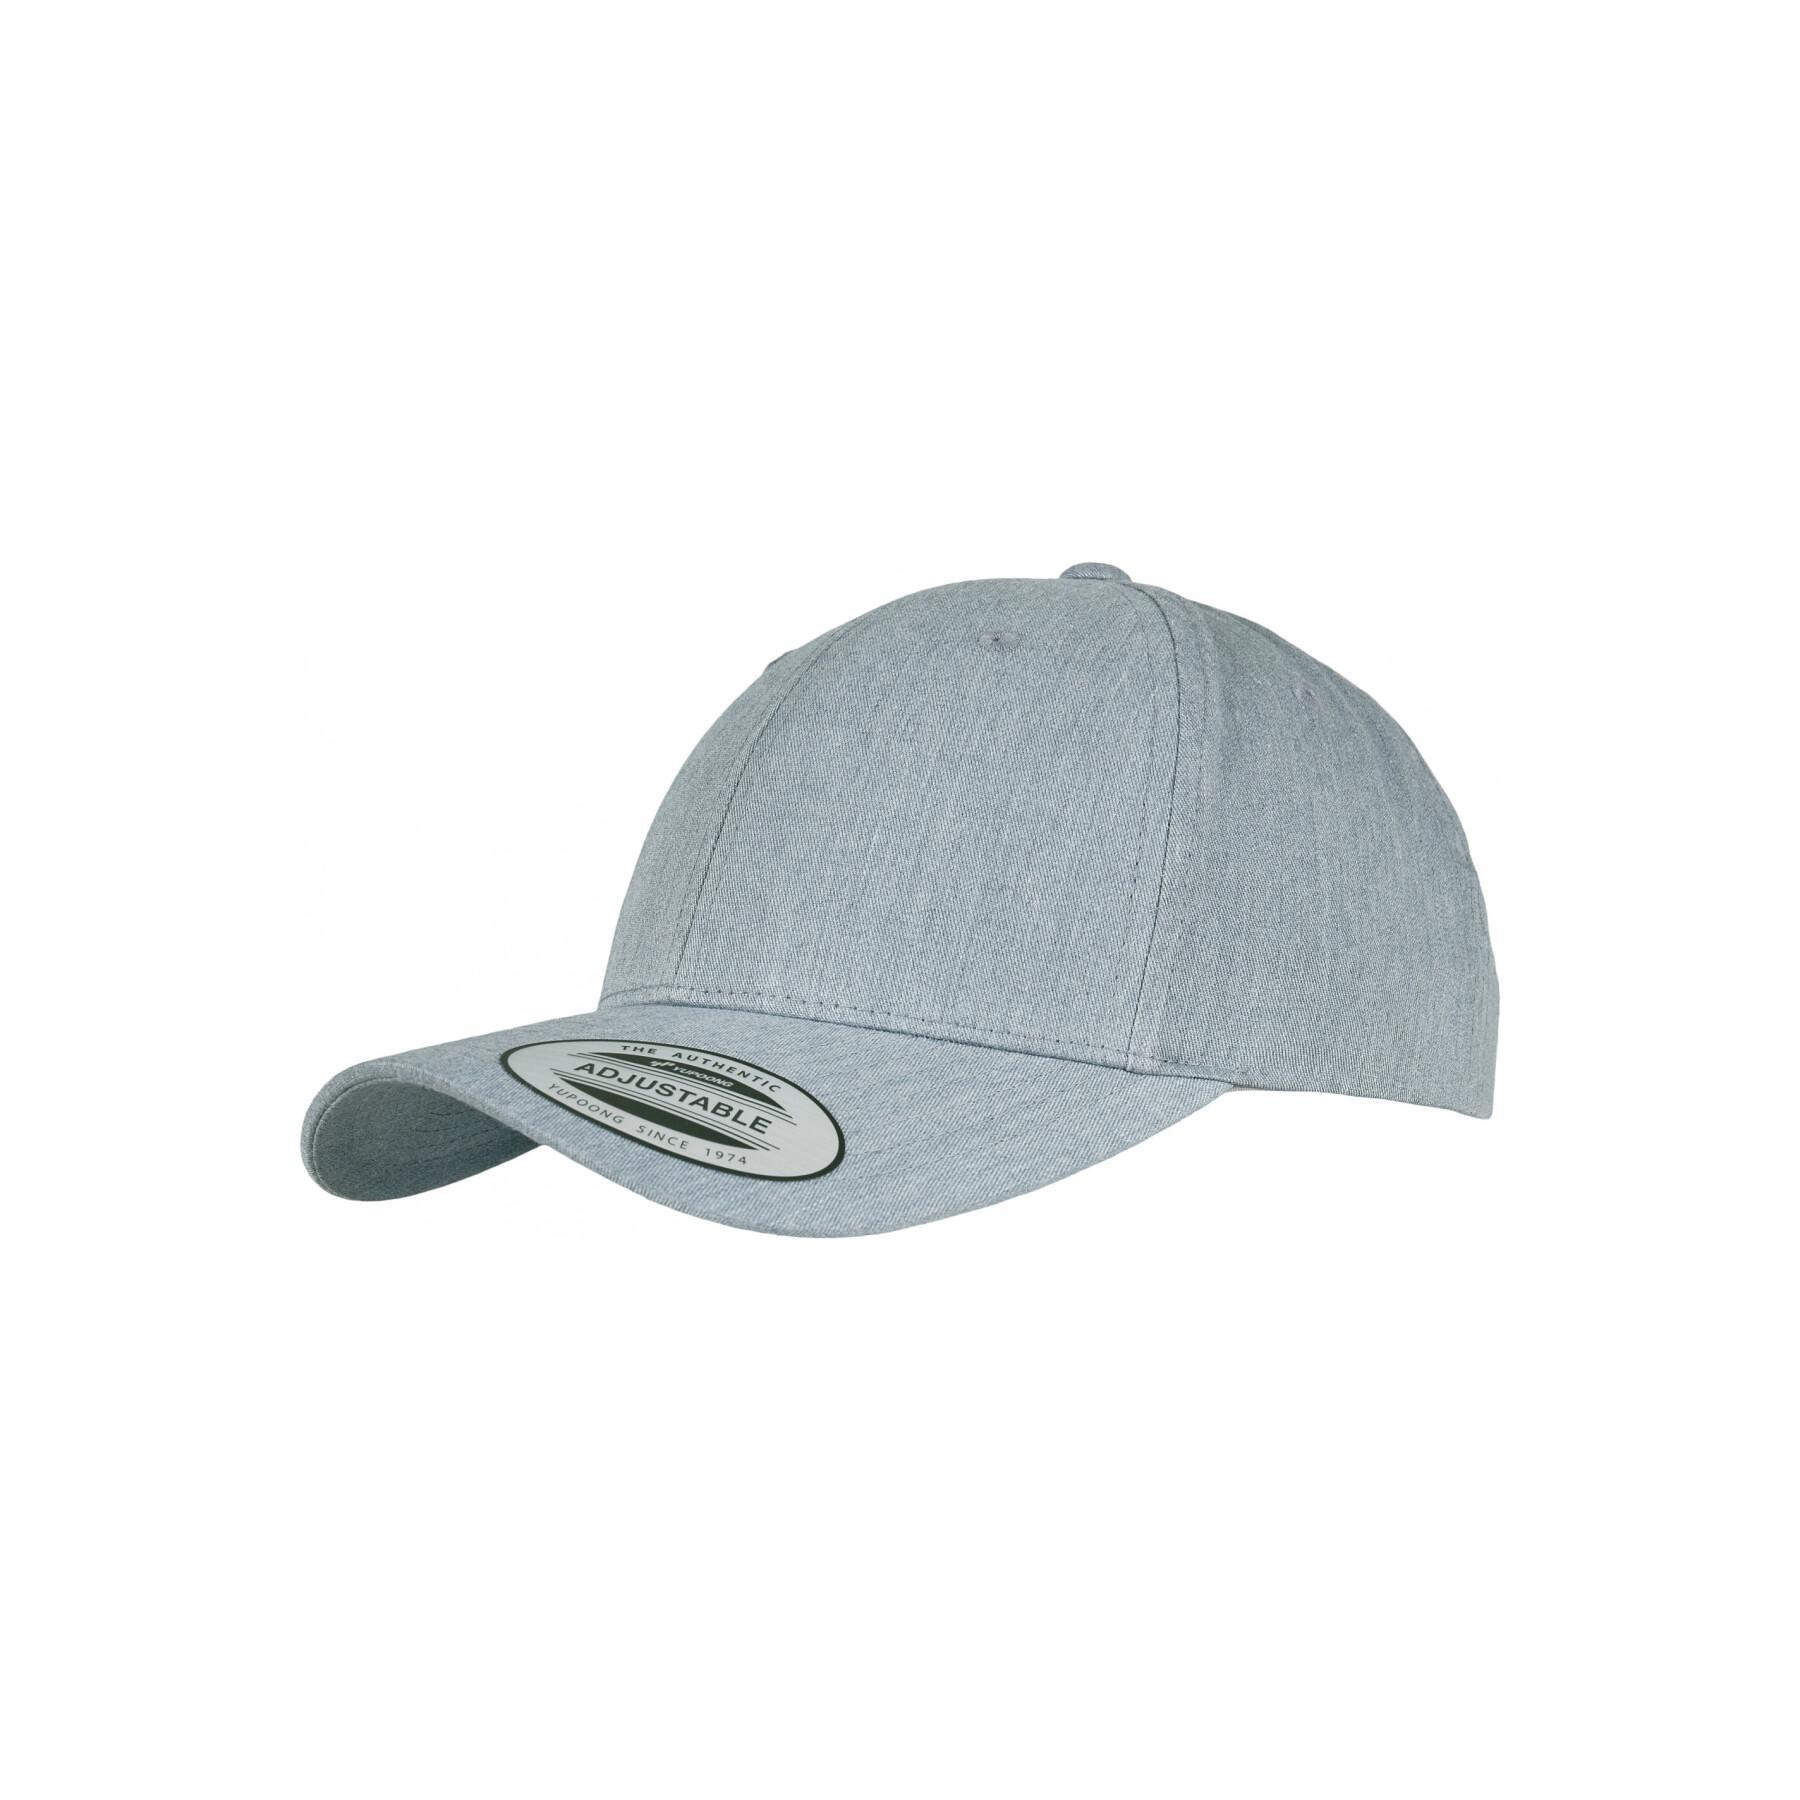 Classic curved cap Flexfit - caps - - Headwear Accessories Baseball